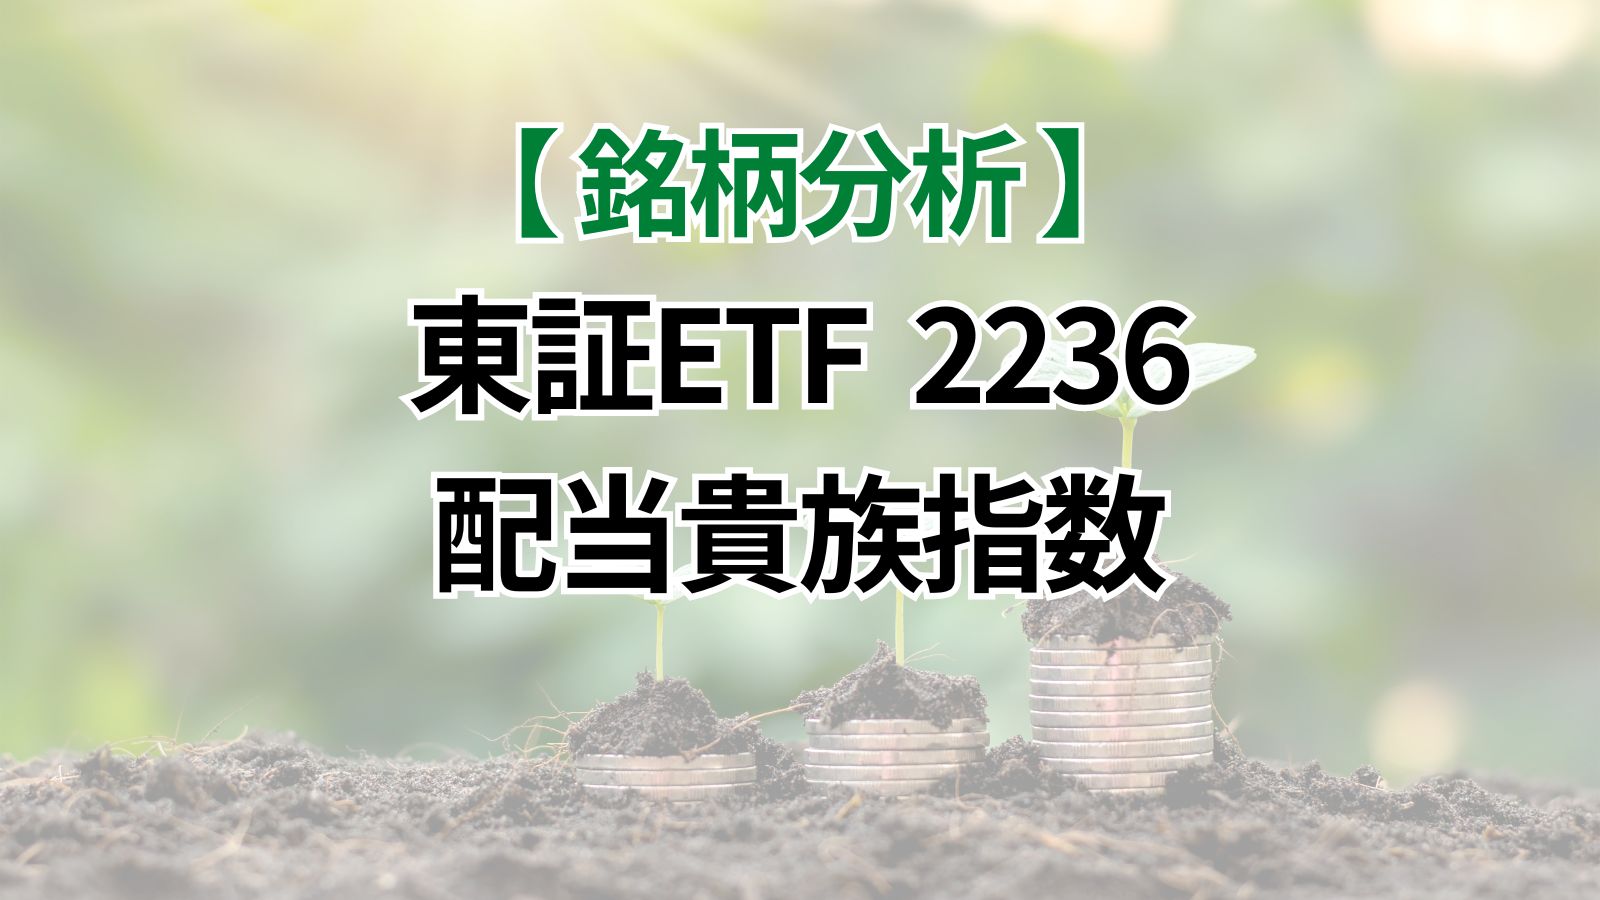 東証ETF2236配当貴族指数へ投資できる